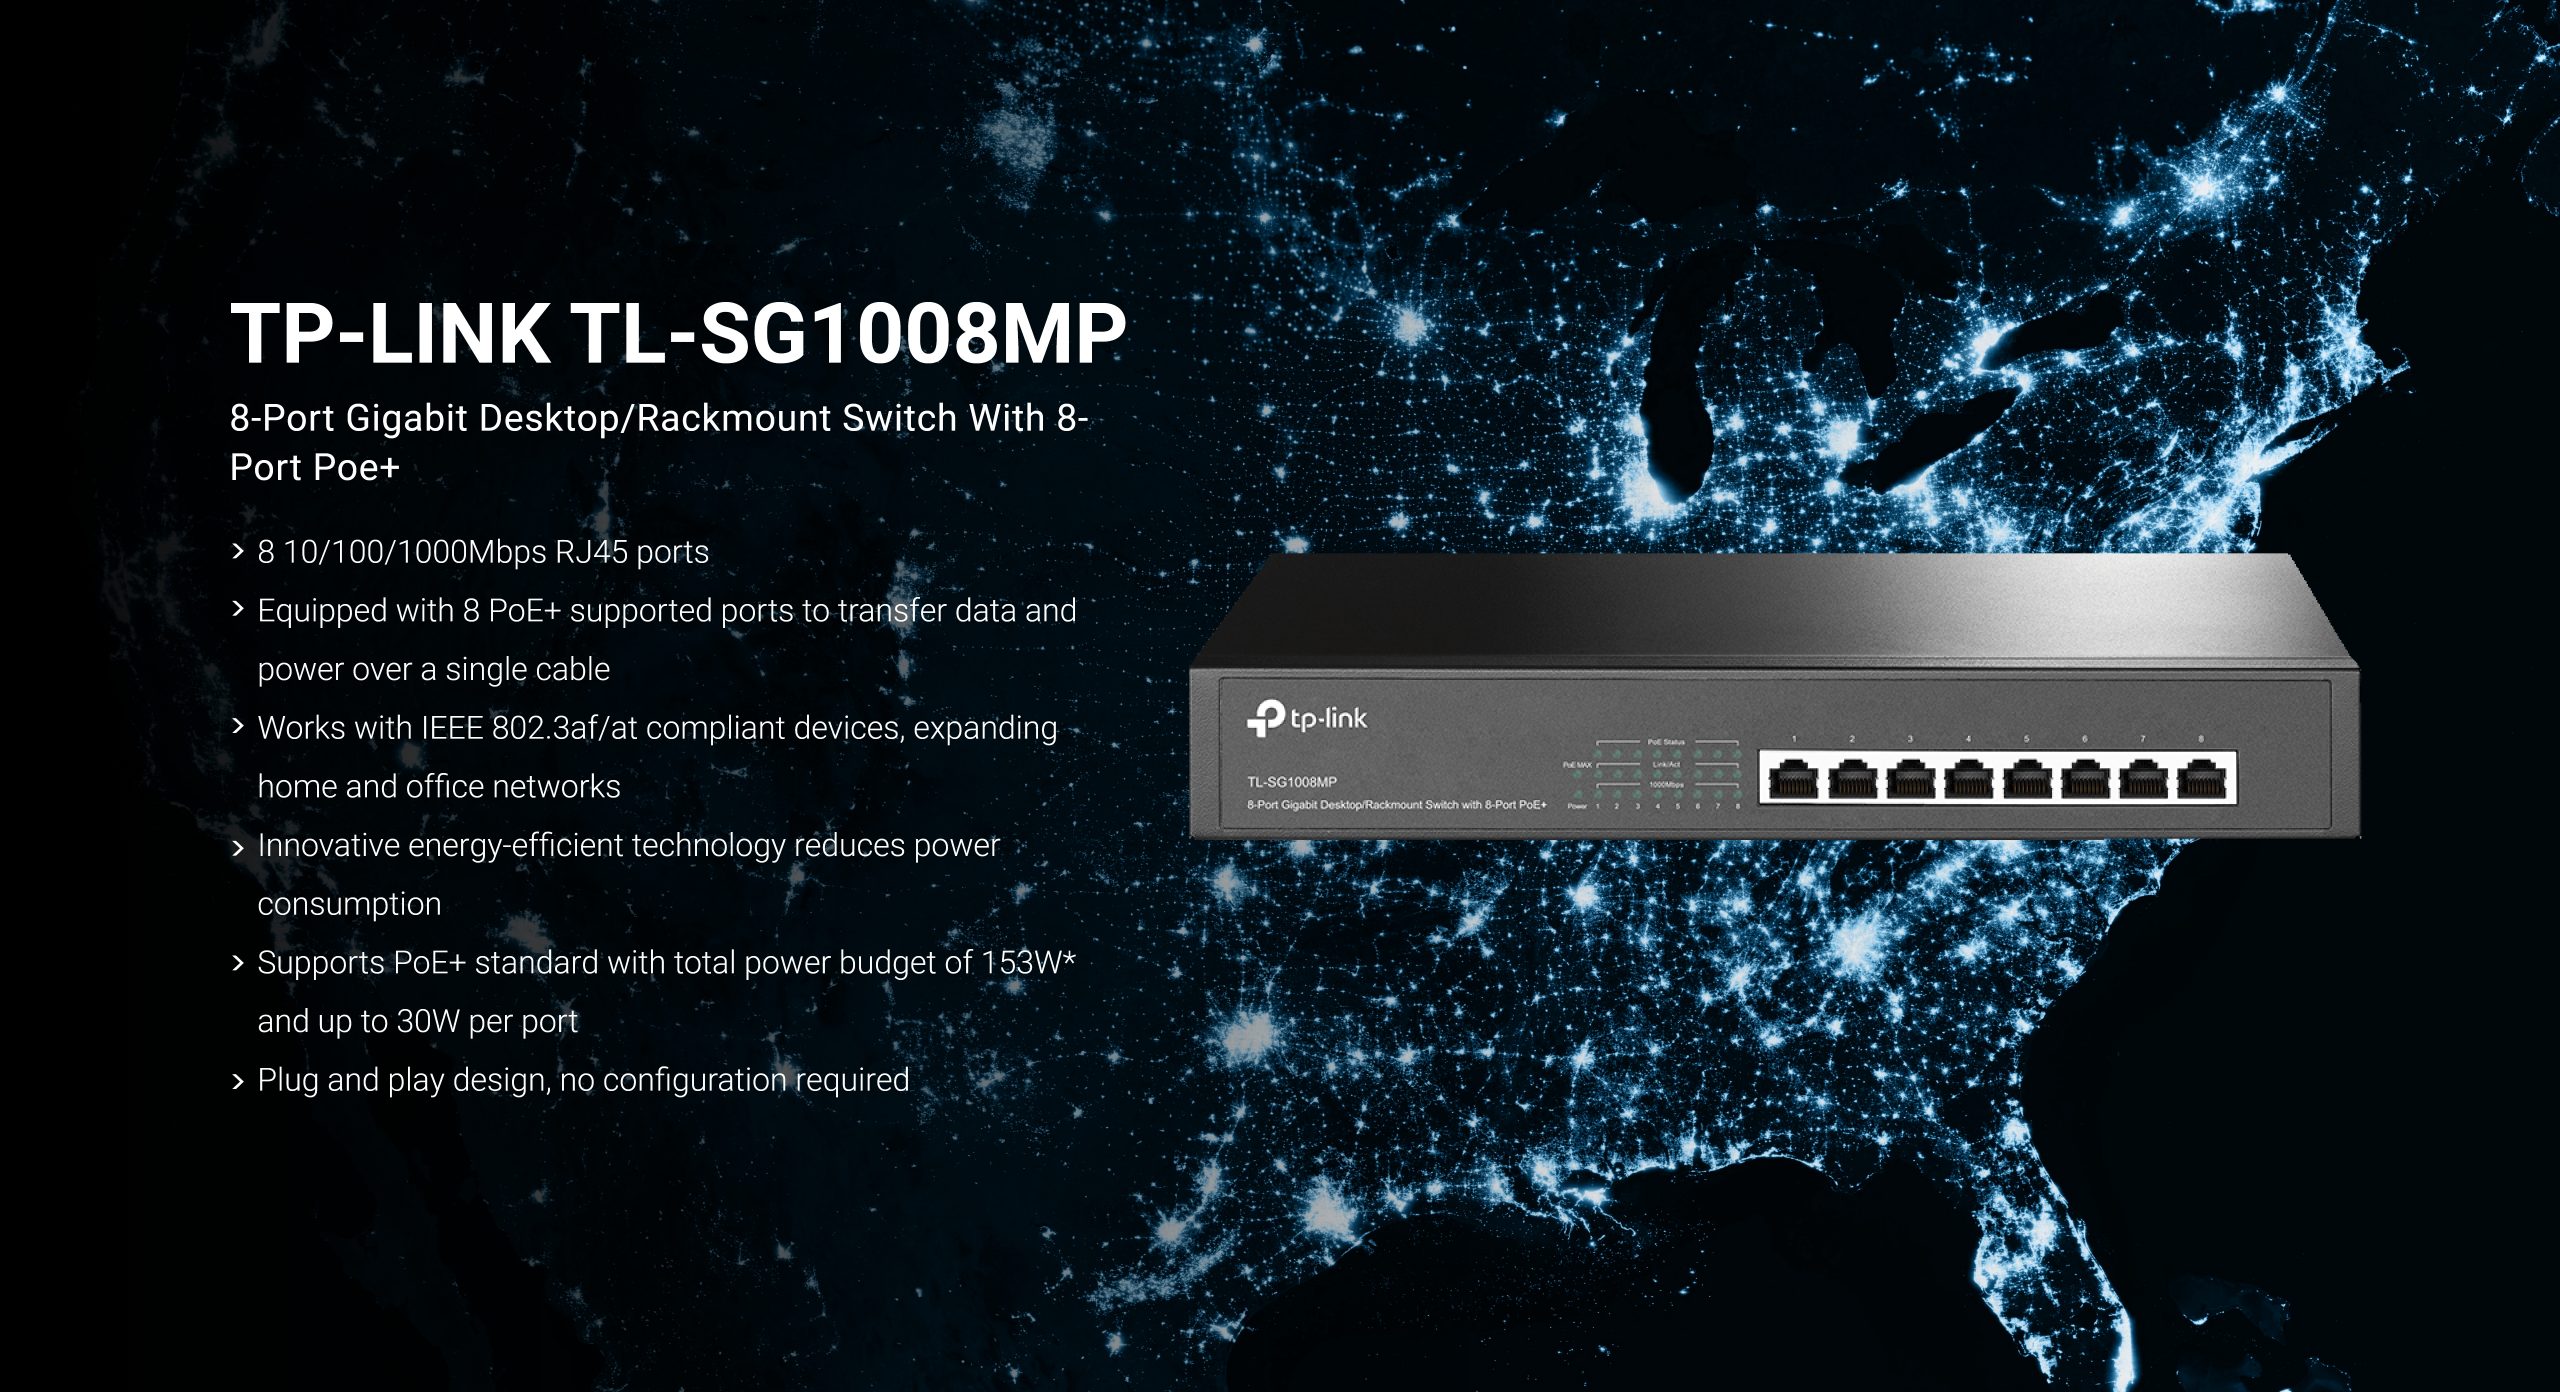 TP-link TL-SG1008MP 8-Port Gigabit Desktop/Rackmount Switch with 8-Port PoE+